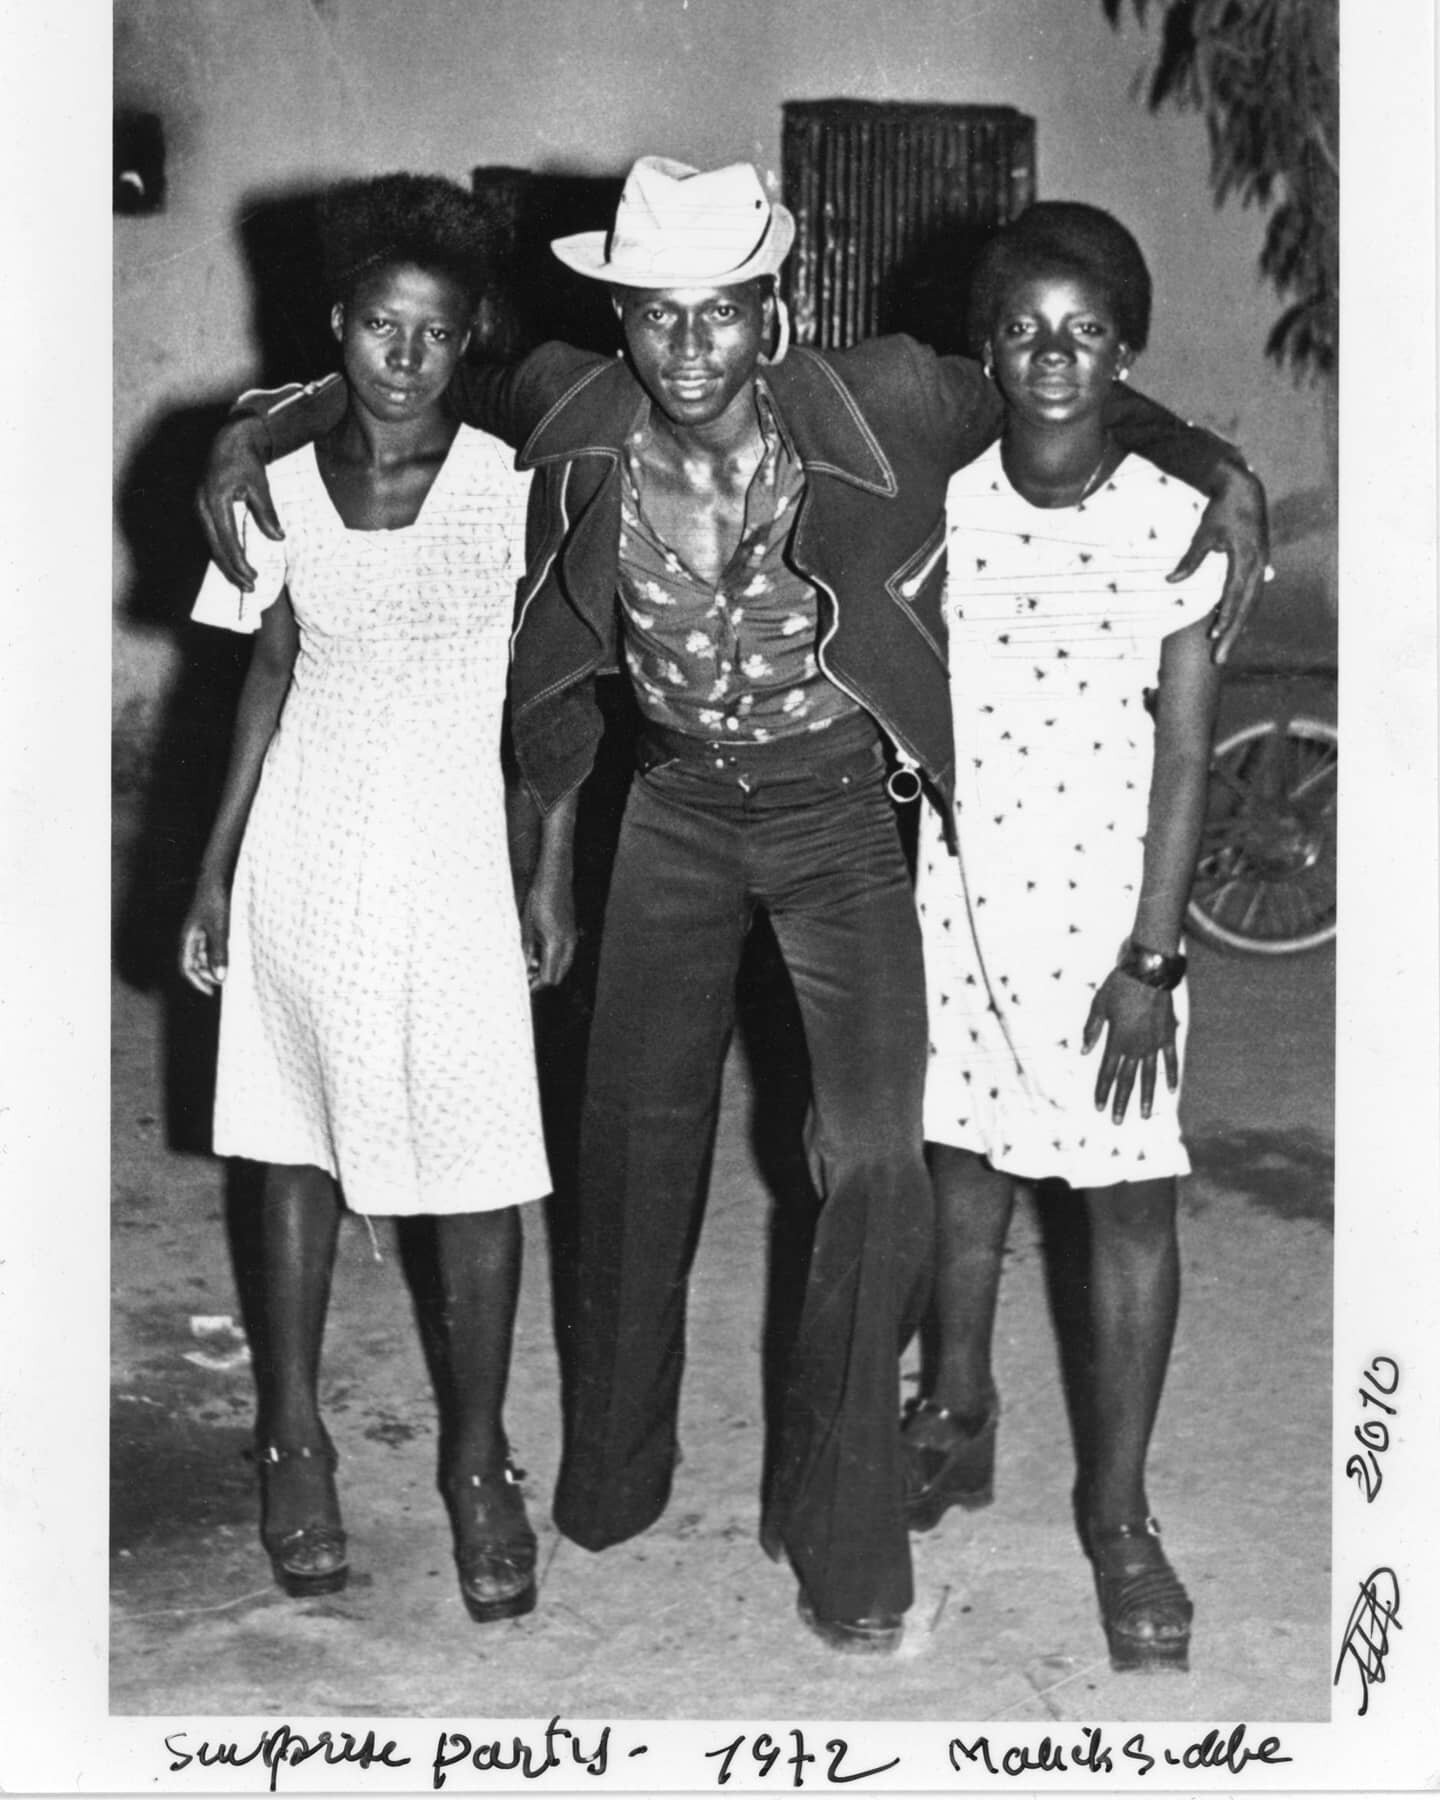 Aux origines du western ! Surprise Party, 1972 par Malick Sidib&eacute; #malicksidibe